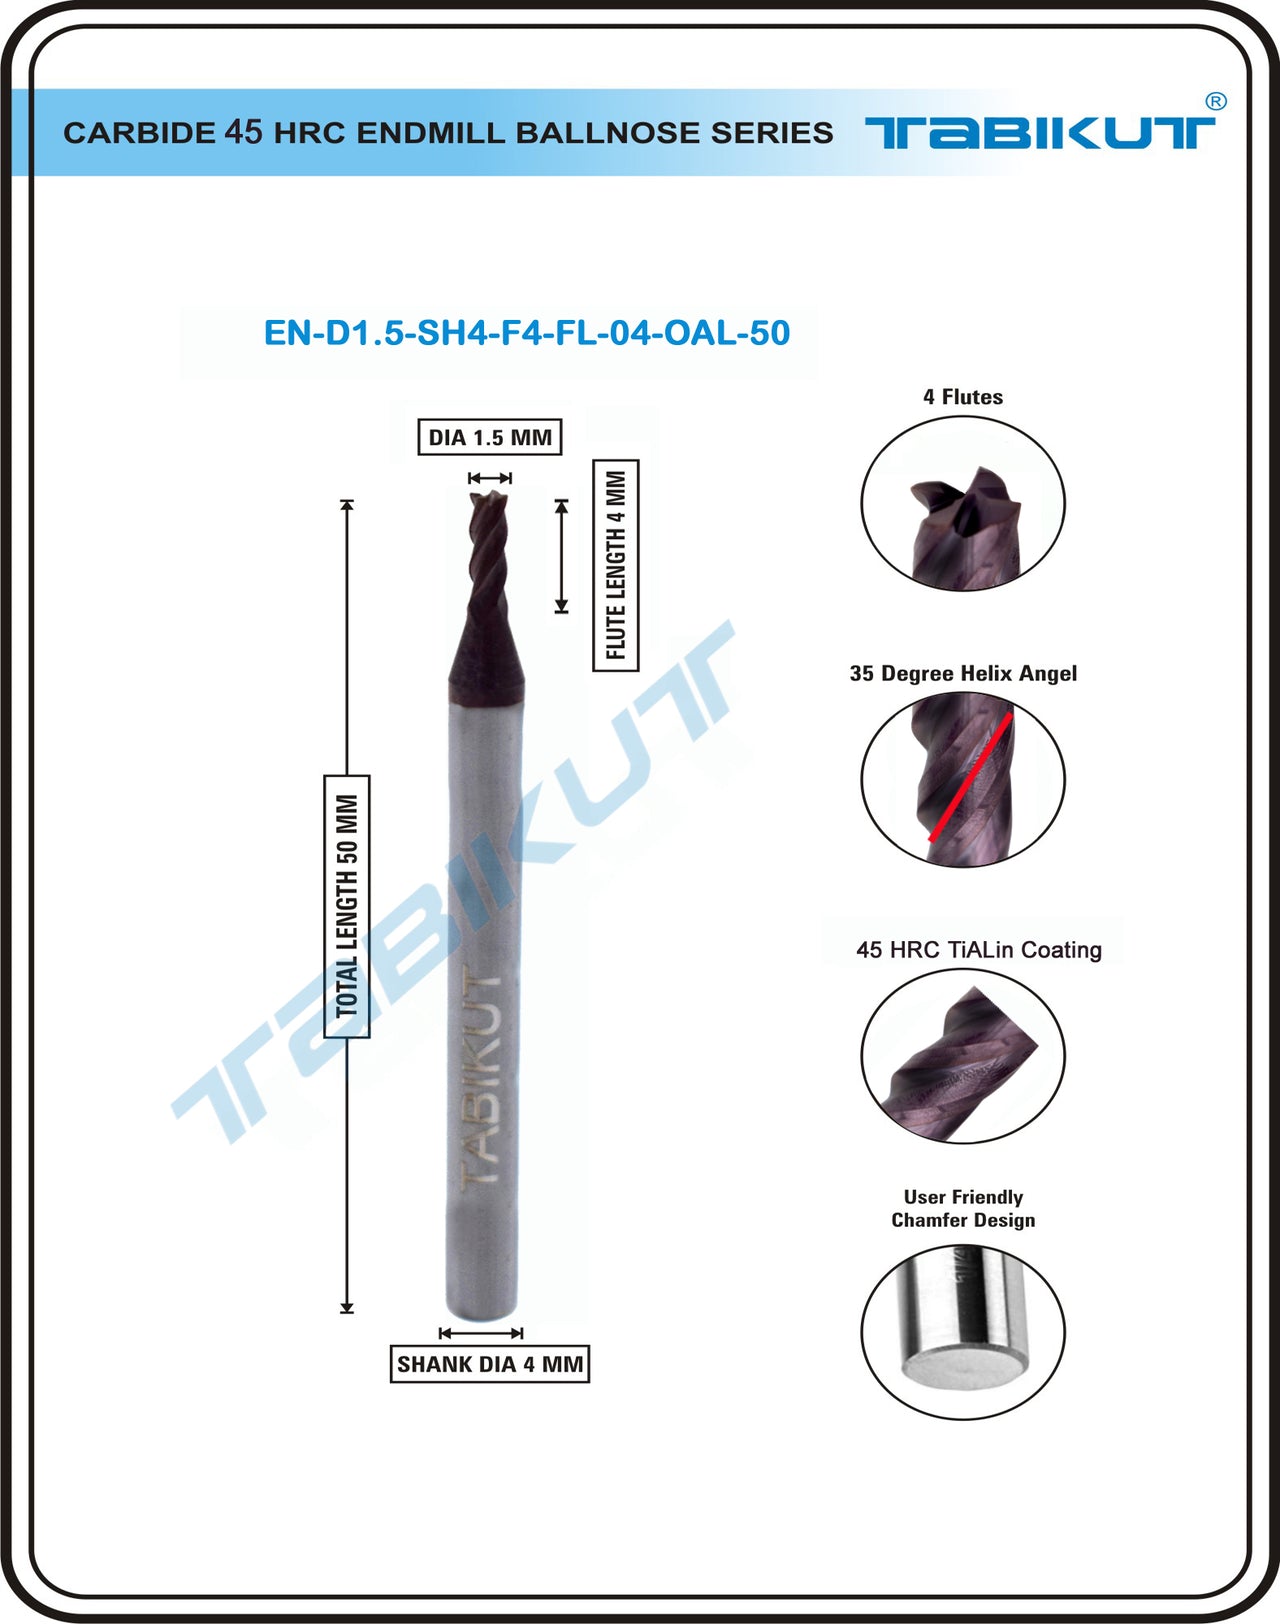 1.5 mm Carbide Endmill 45 HRC